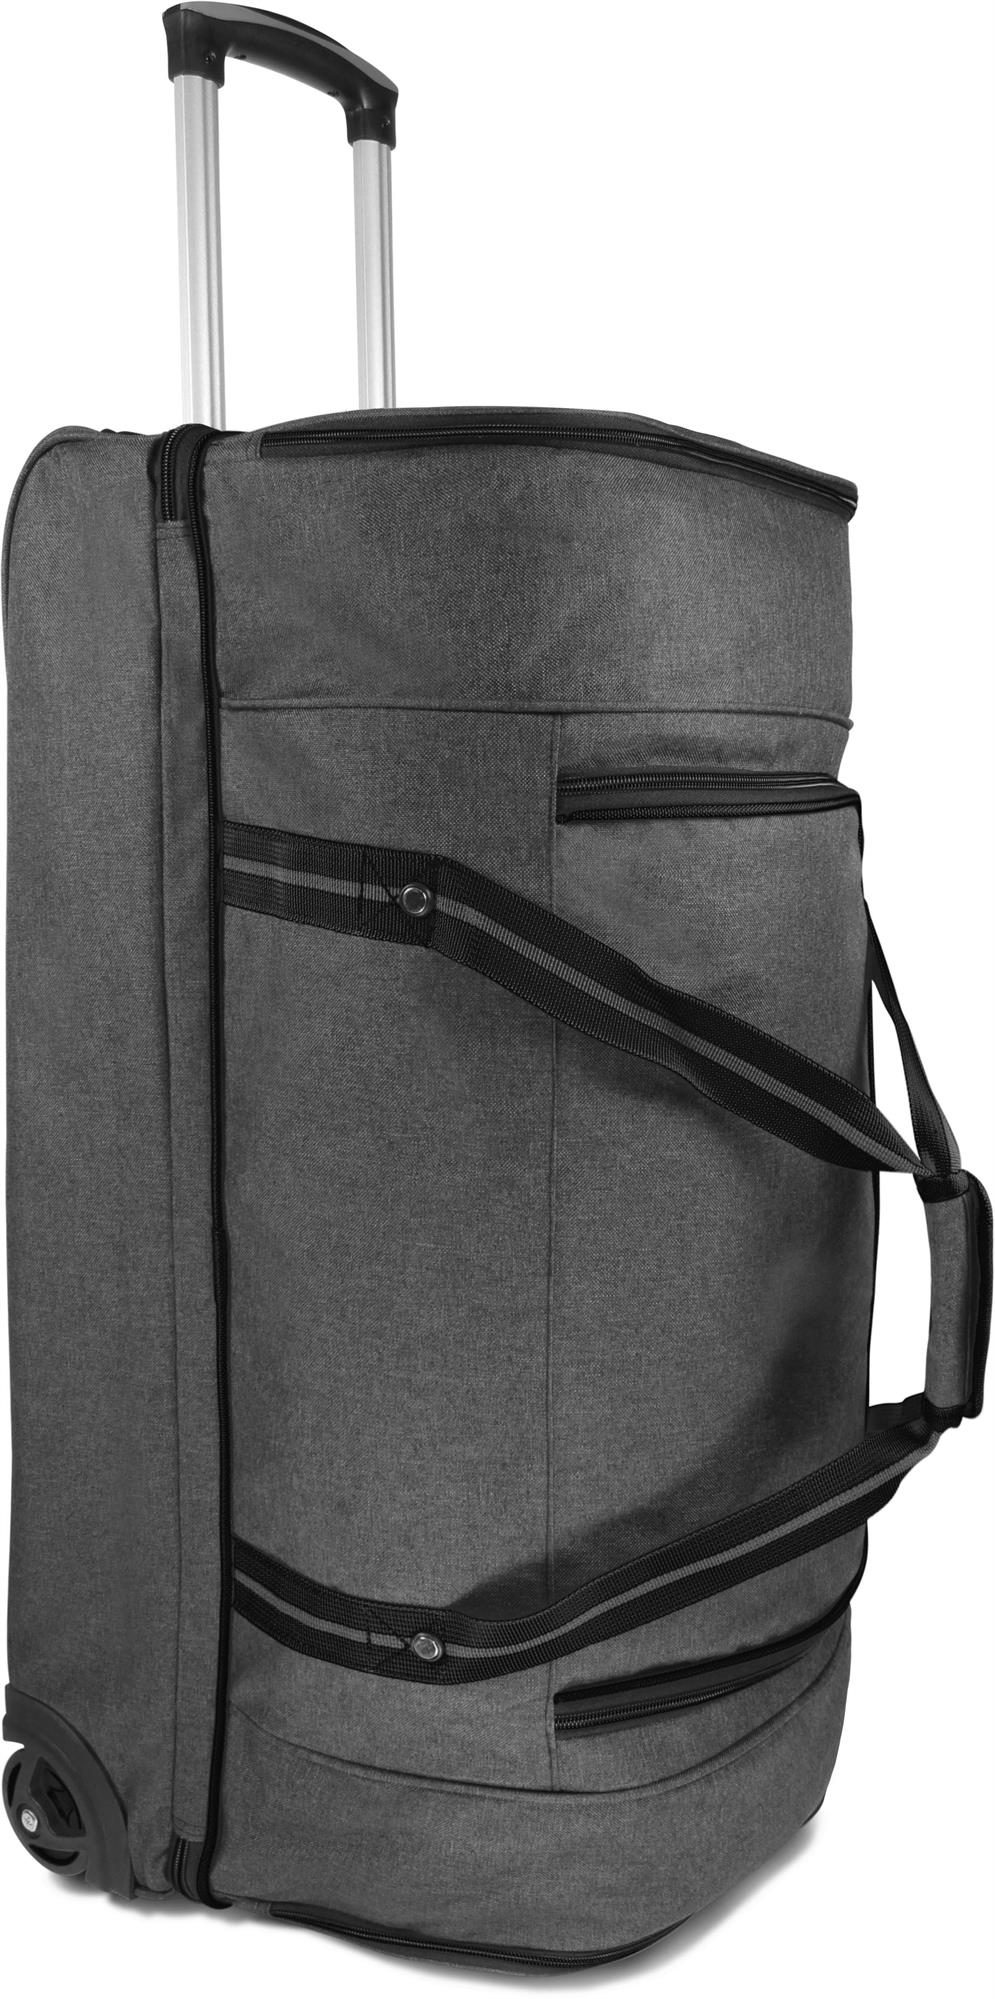 Stabile Reisetasche 90 L große Sporttasche mit Rollen und Teleskopgriff Trolley